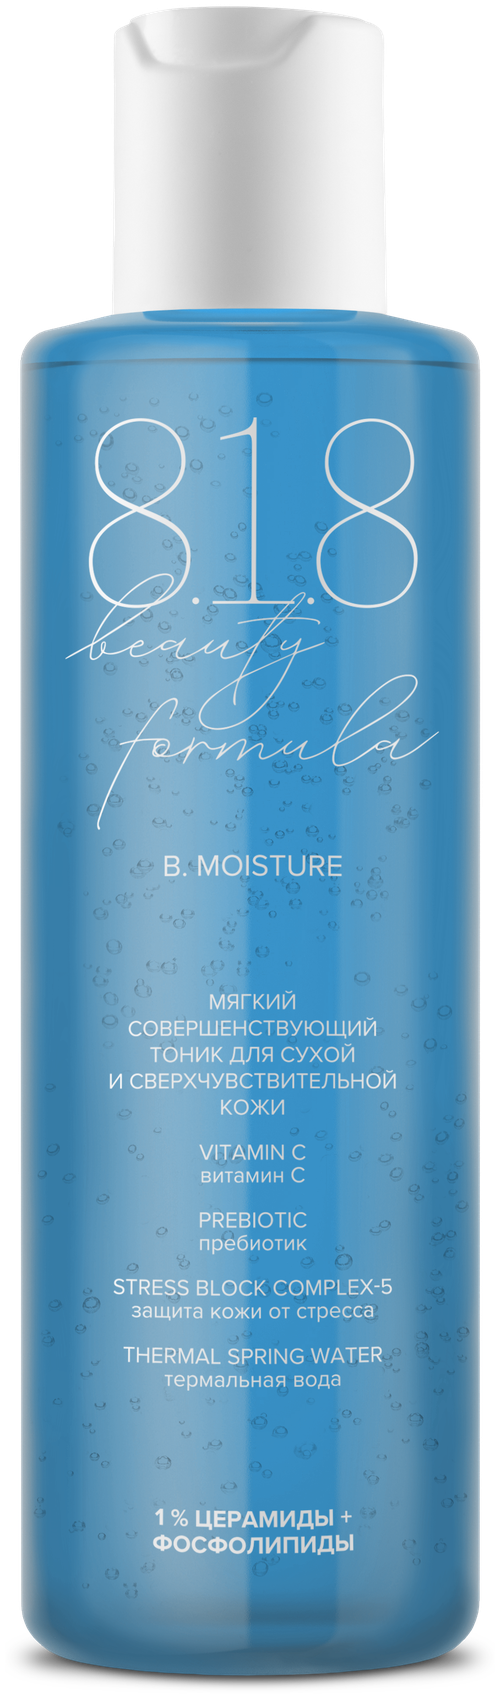 818 beauty formula estiqe Мягкий совершенствующий тоник для сухой и сверхчувствительной кожи фл 200 мл